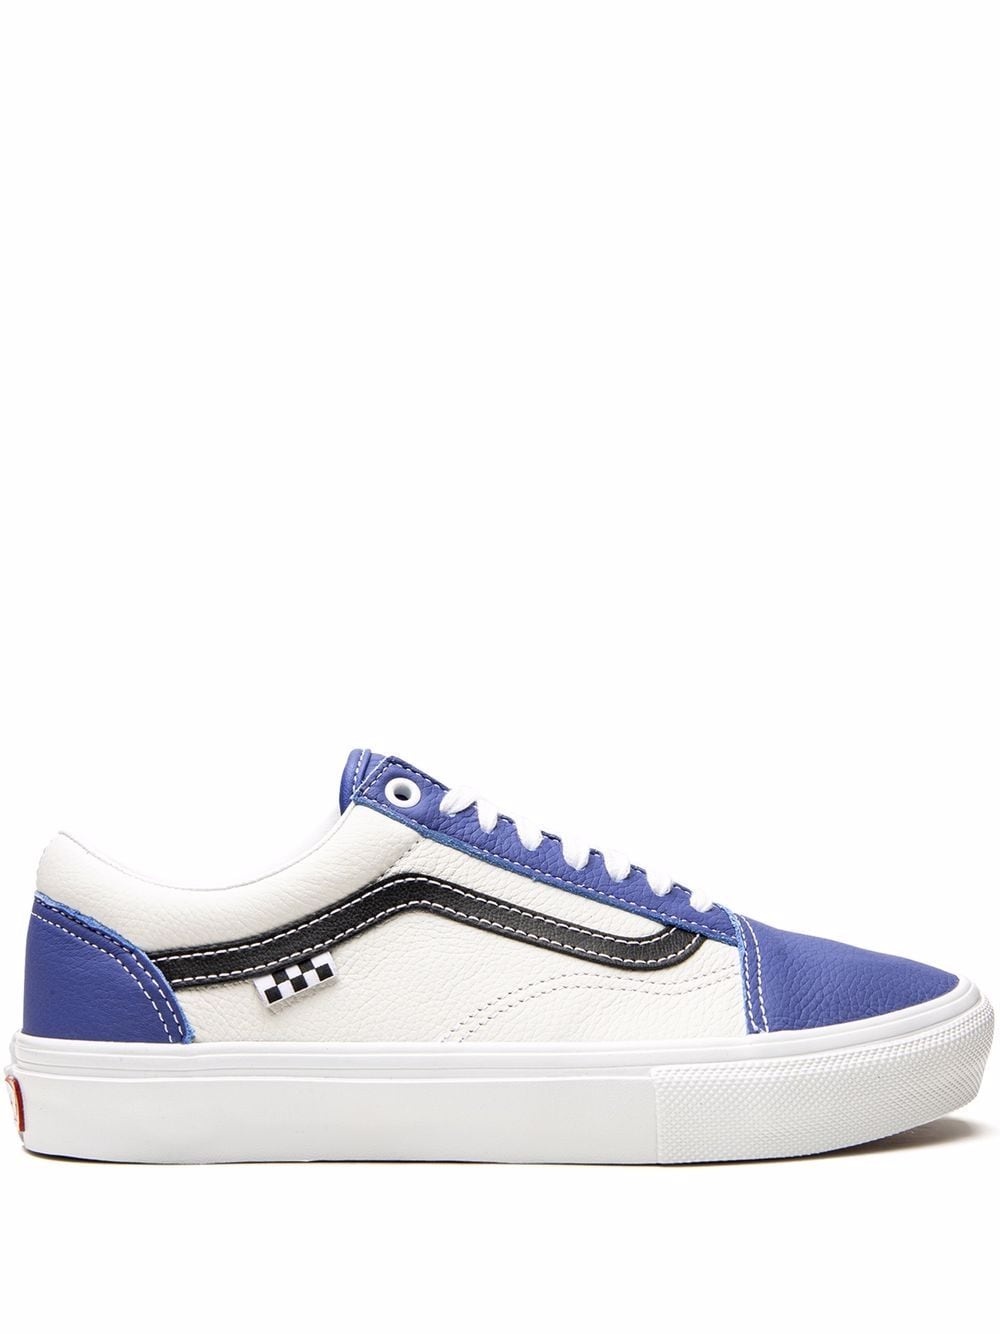 Vans Skate Old Skool "Sport Leather - Blue/White" sneakers von Vans